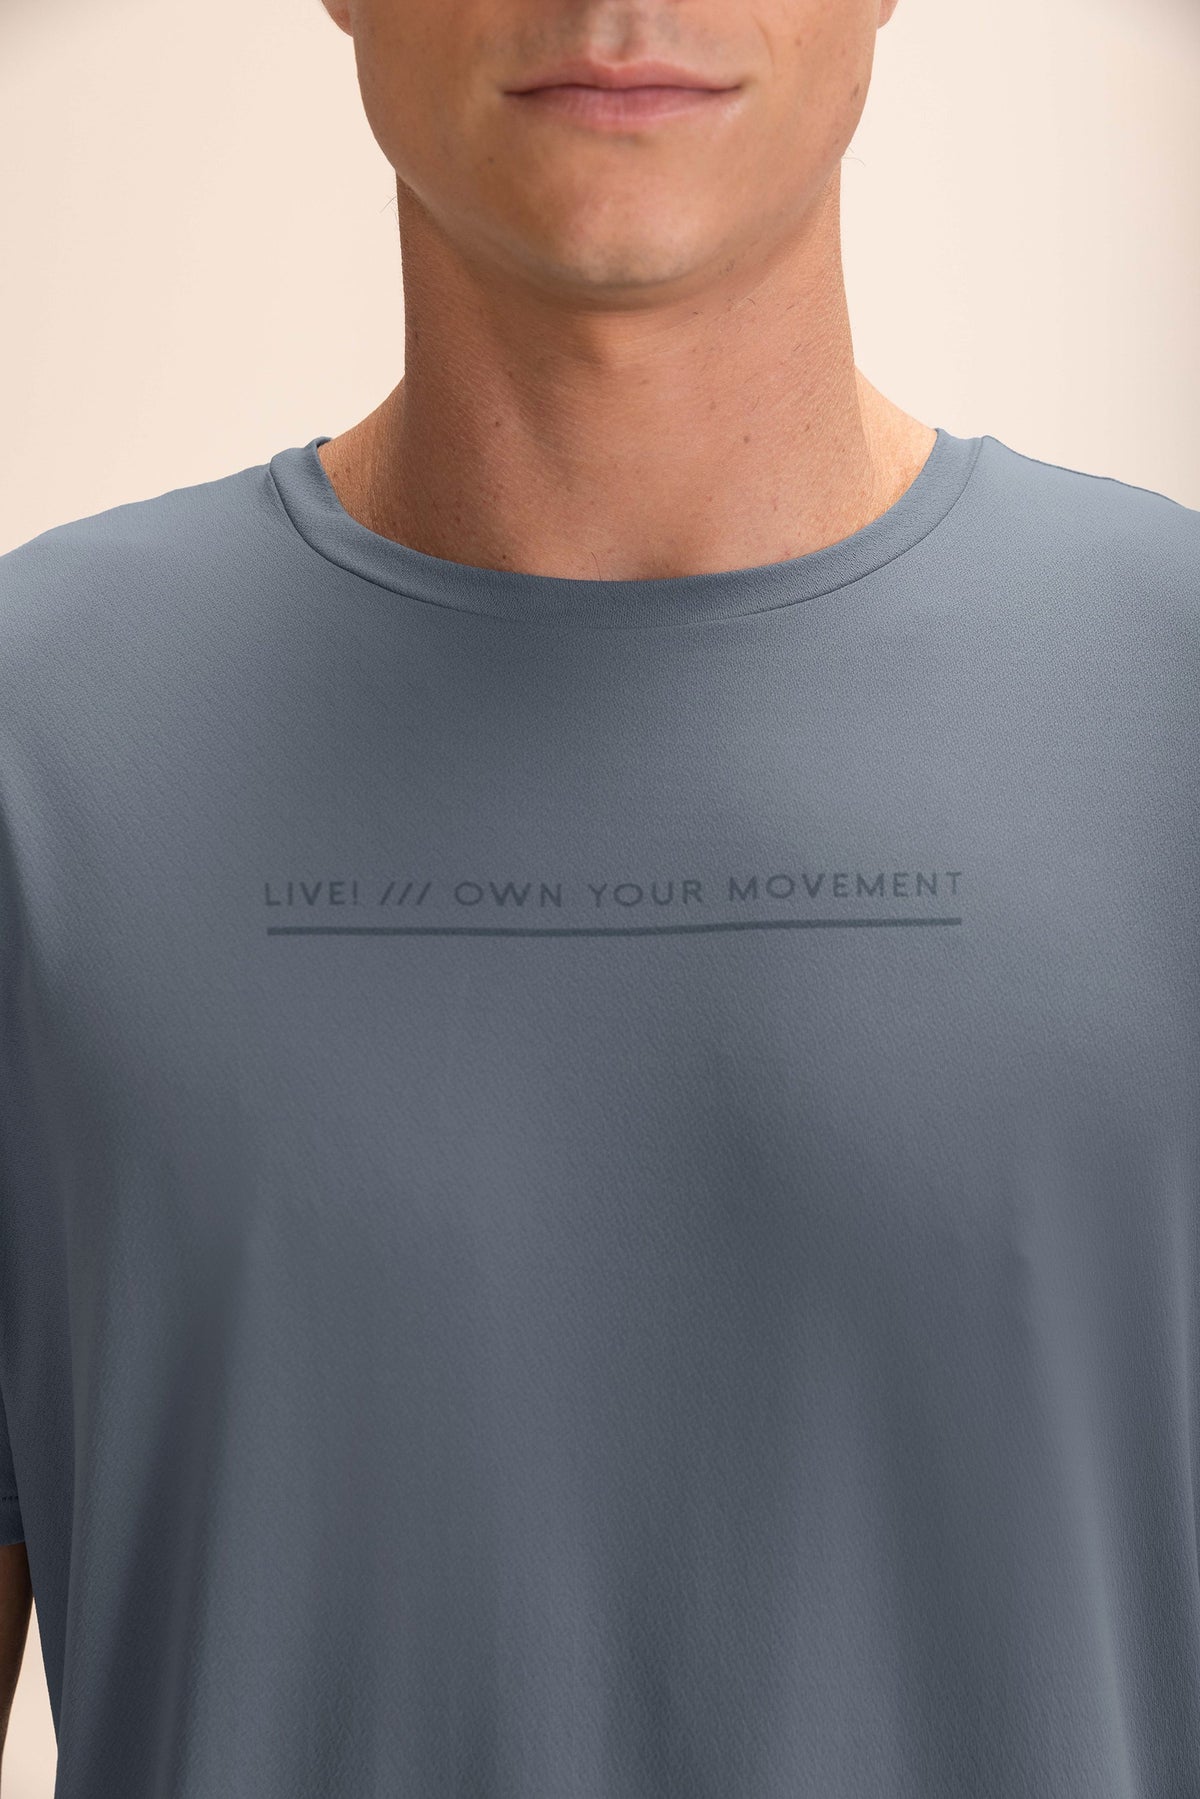 Comfy Movements Men's T-shirt